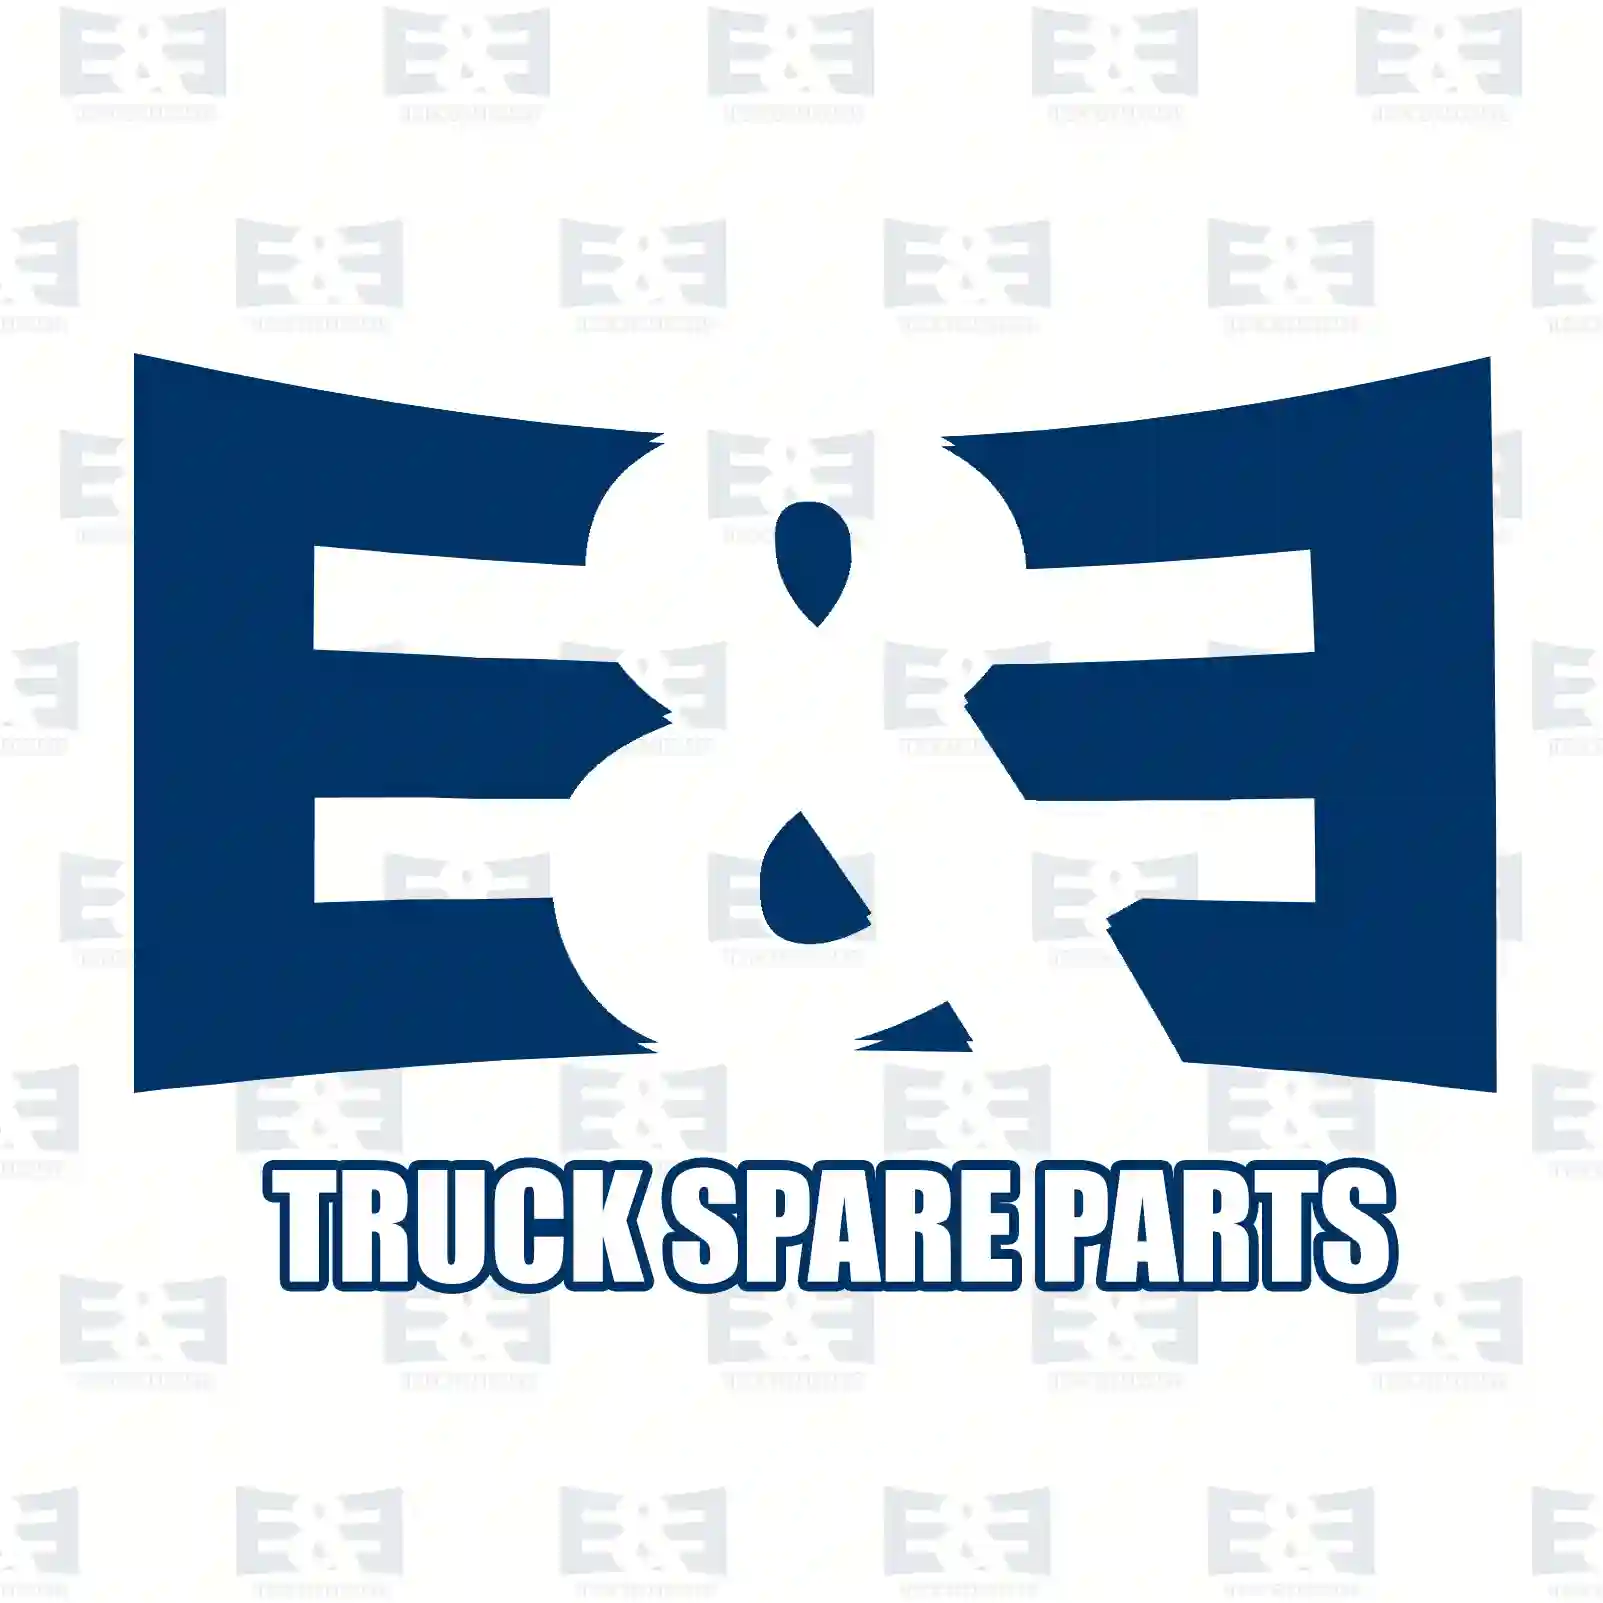 Brake disc, 2E2296236, 1764283, 2013002, BK21-2A097-BA, BK21-2A097-FA, , , , , ||  2E2296236 E&E Truck Spare Parts | Truck Spare Parts, Auotomotive Spare Parts Brake disc, 2E2296236, 1764283, 2013002, BK21-2A097-BA, BK21-2A097-FA, , , , , ||  2E2296236 E&E Truck Spare Parts | Truck Spare Parts, Auotomotive Spare Parts